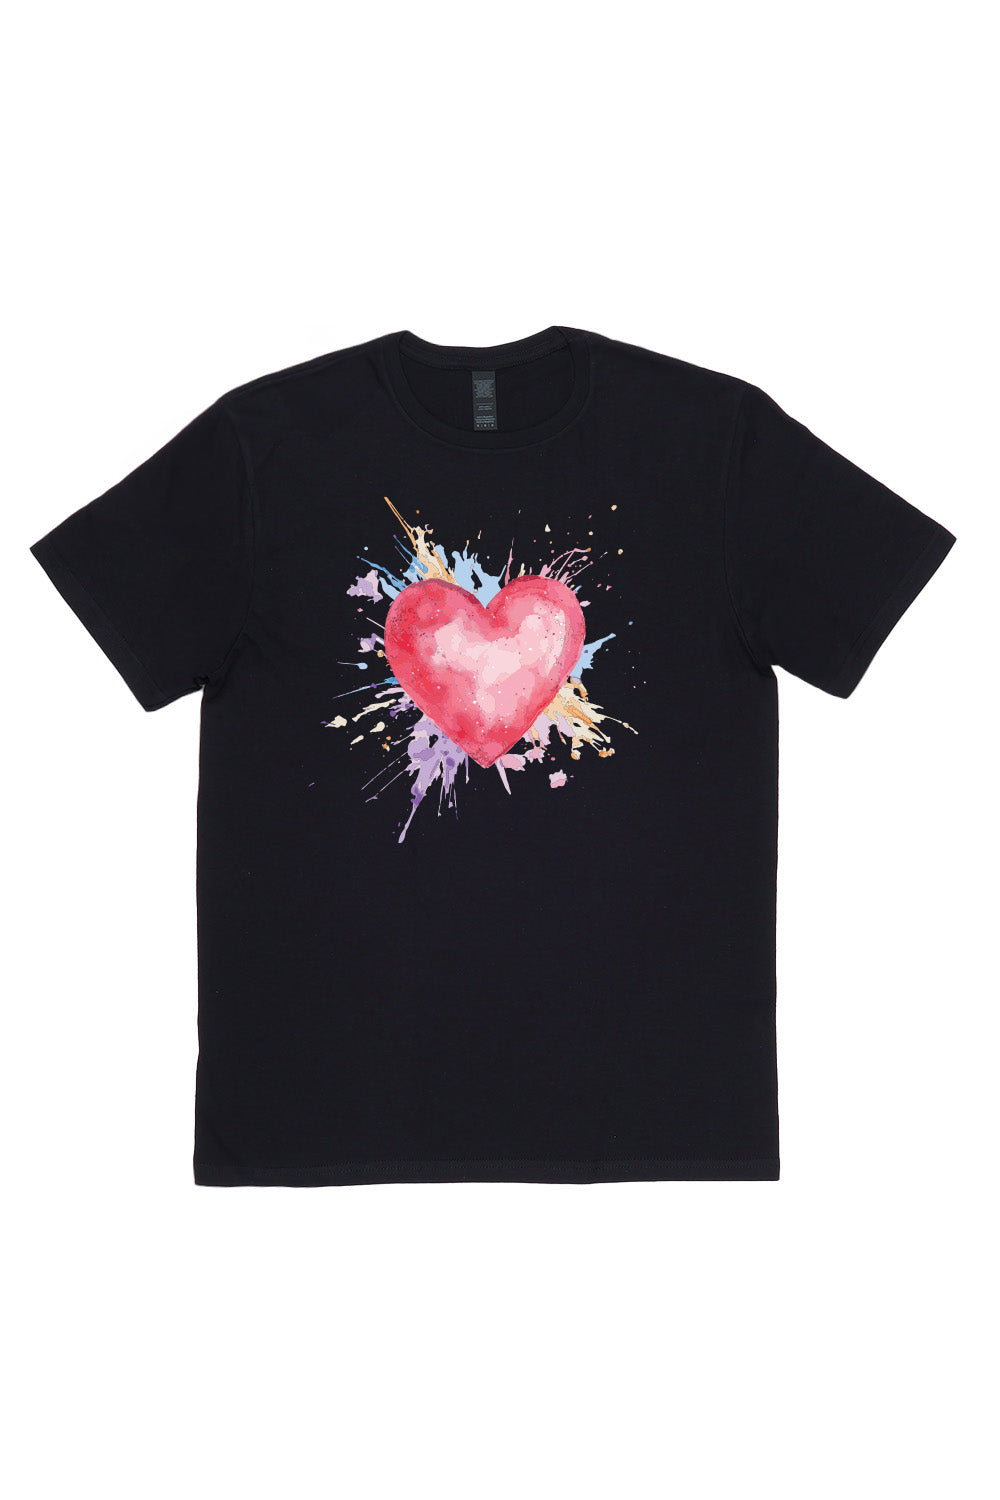 Heart With Pastel Splash T-Shirt in Black (Custom Packs)